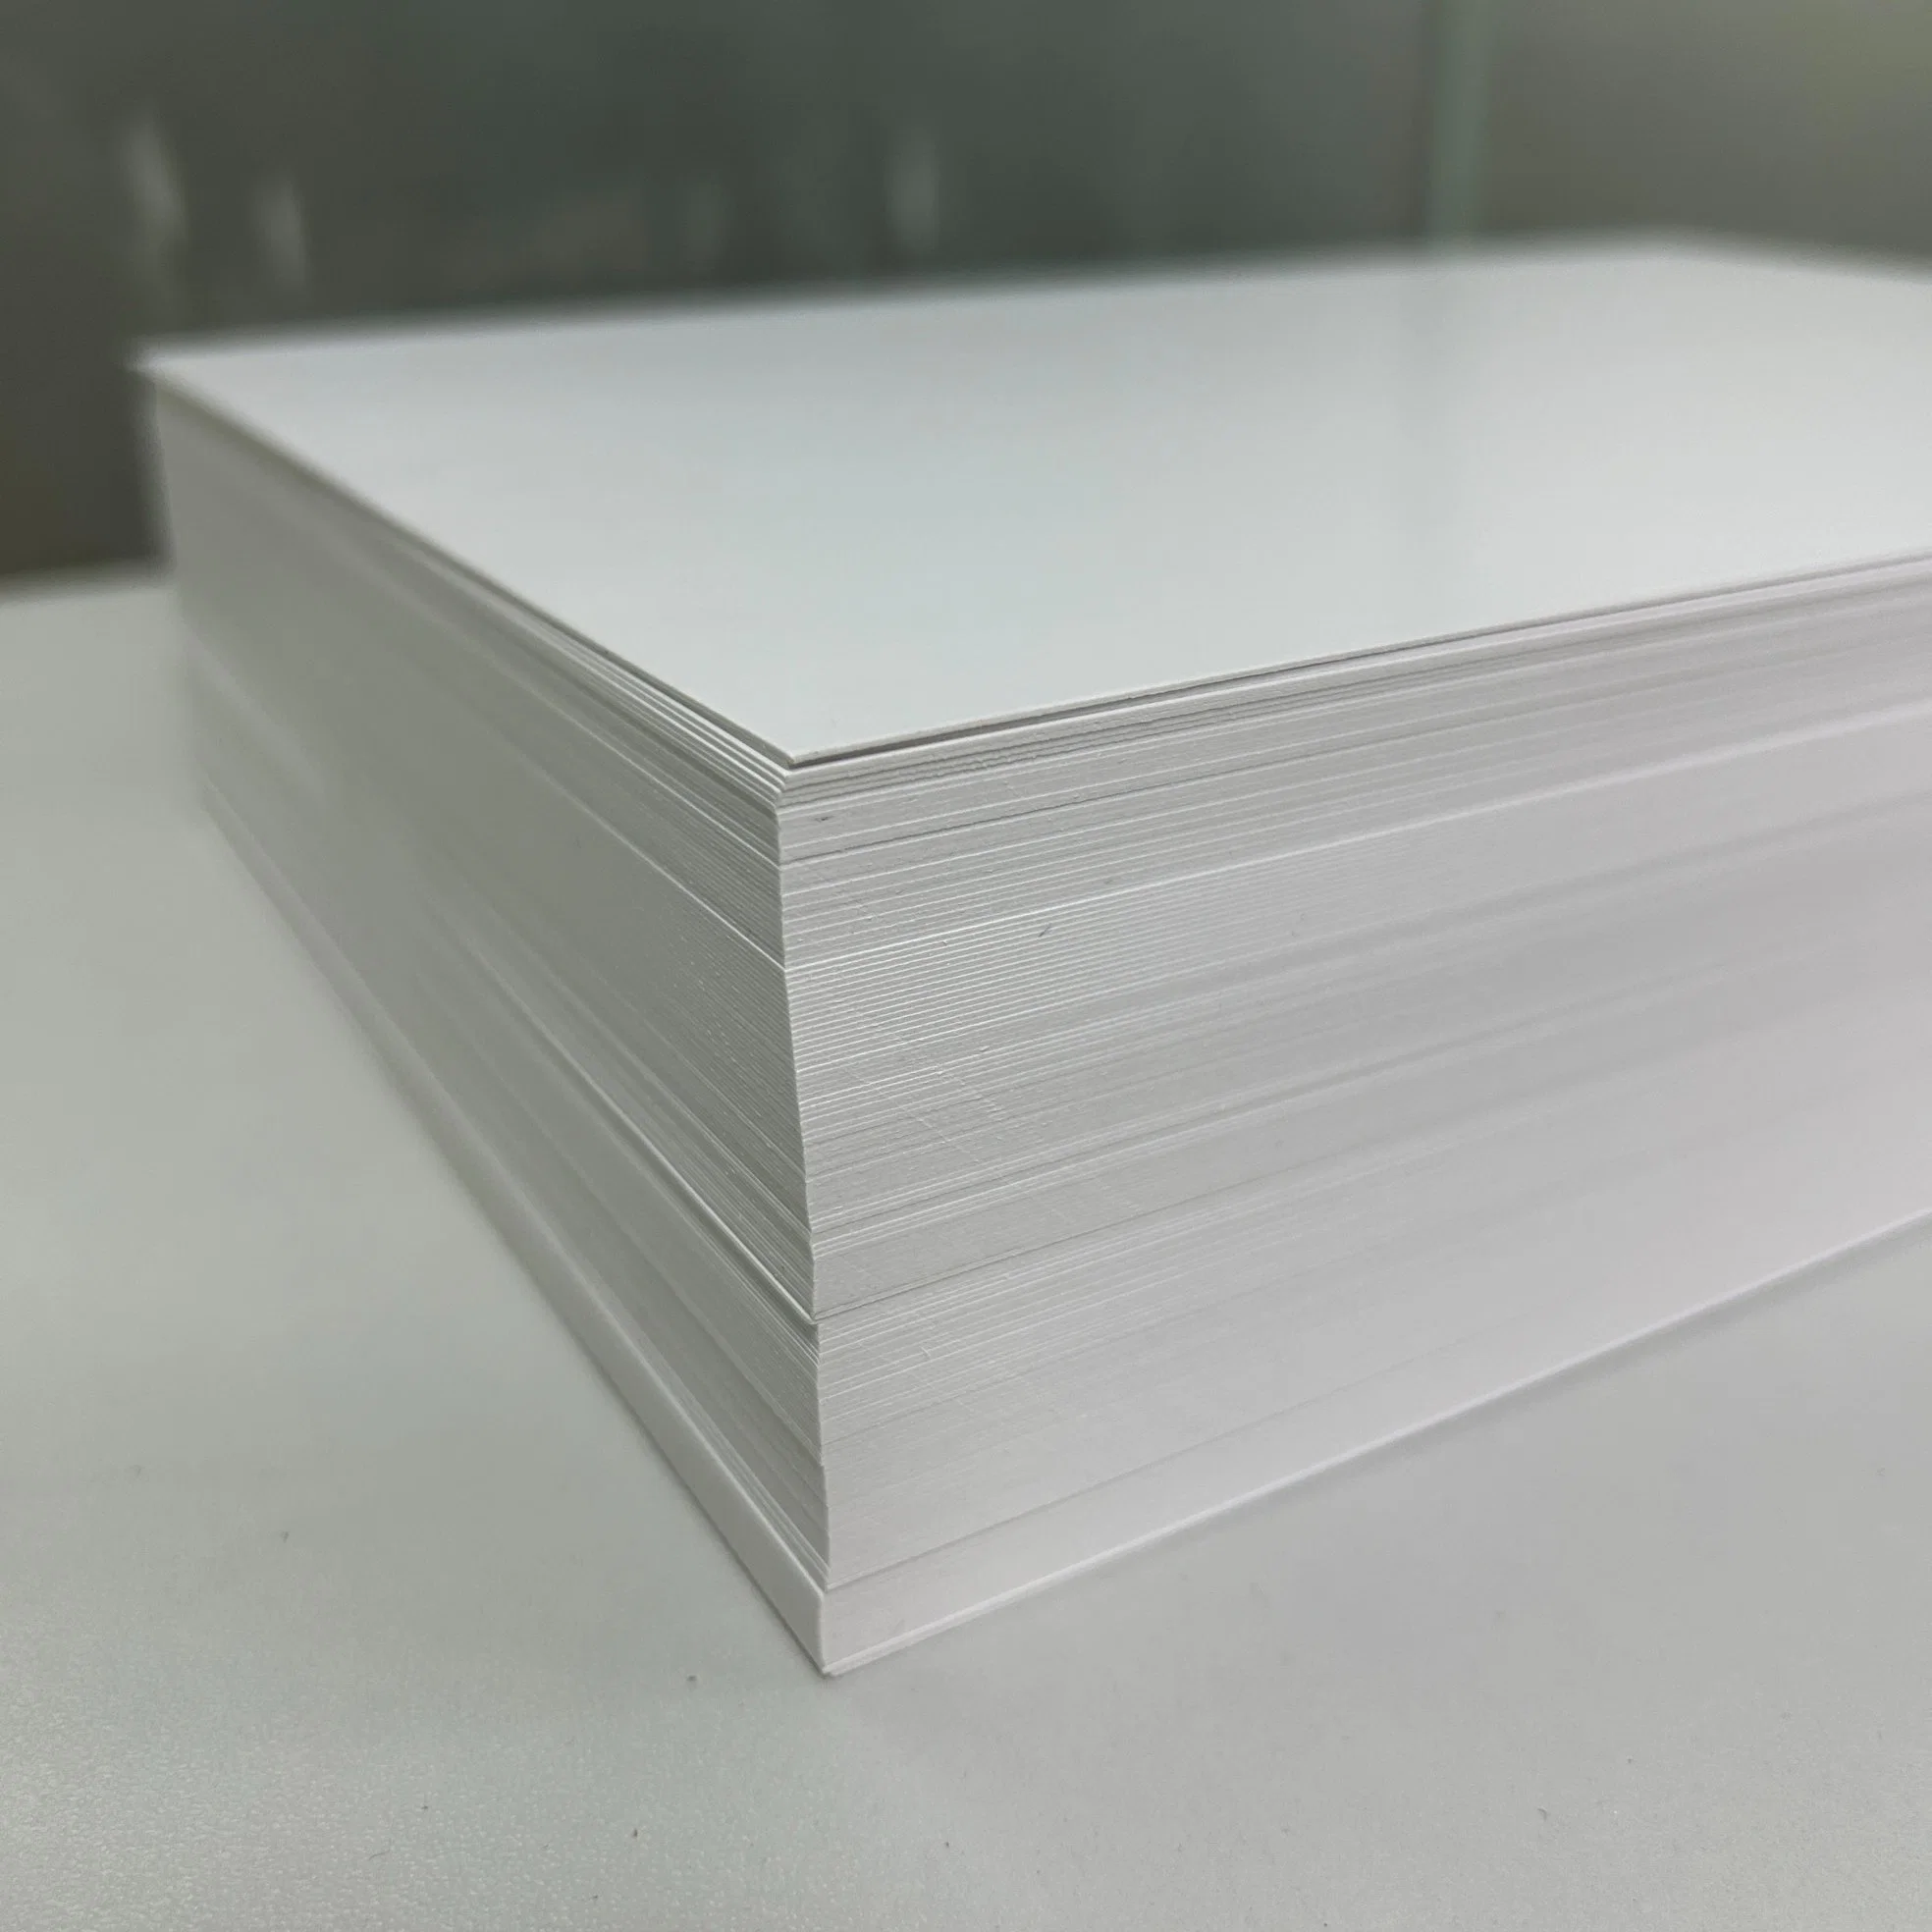 El papel de copia de la oficina de impresión de papel bond blanco